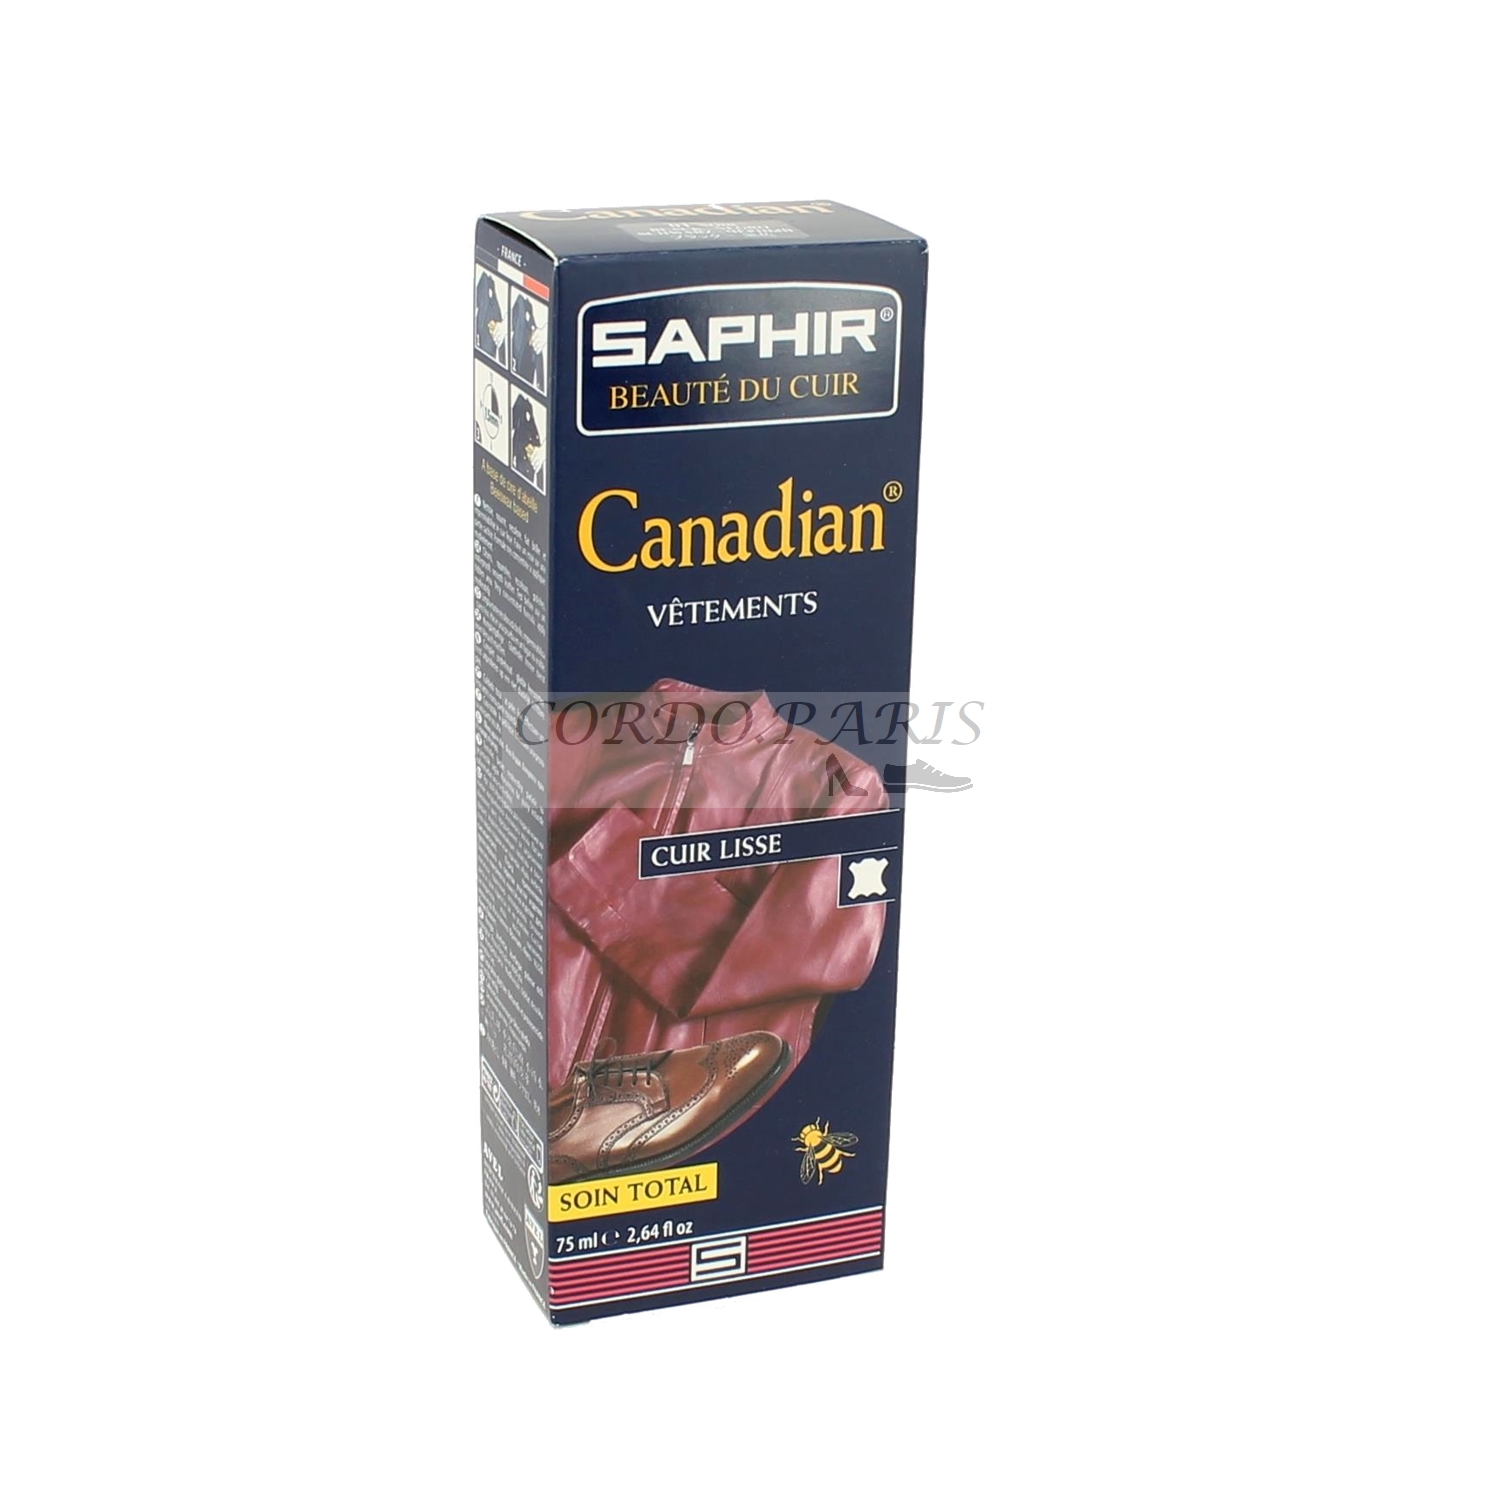 Soin total vêtements cuir Canadian Saphir